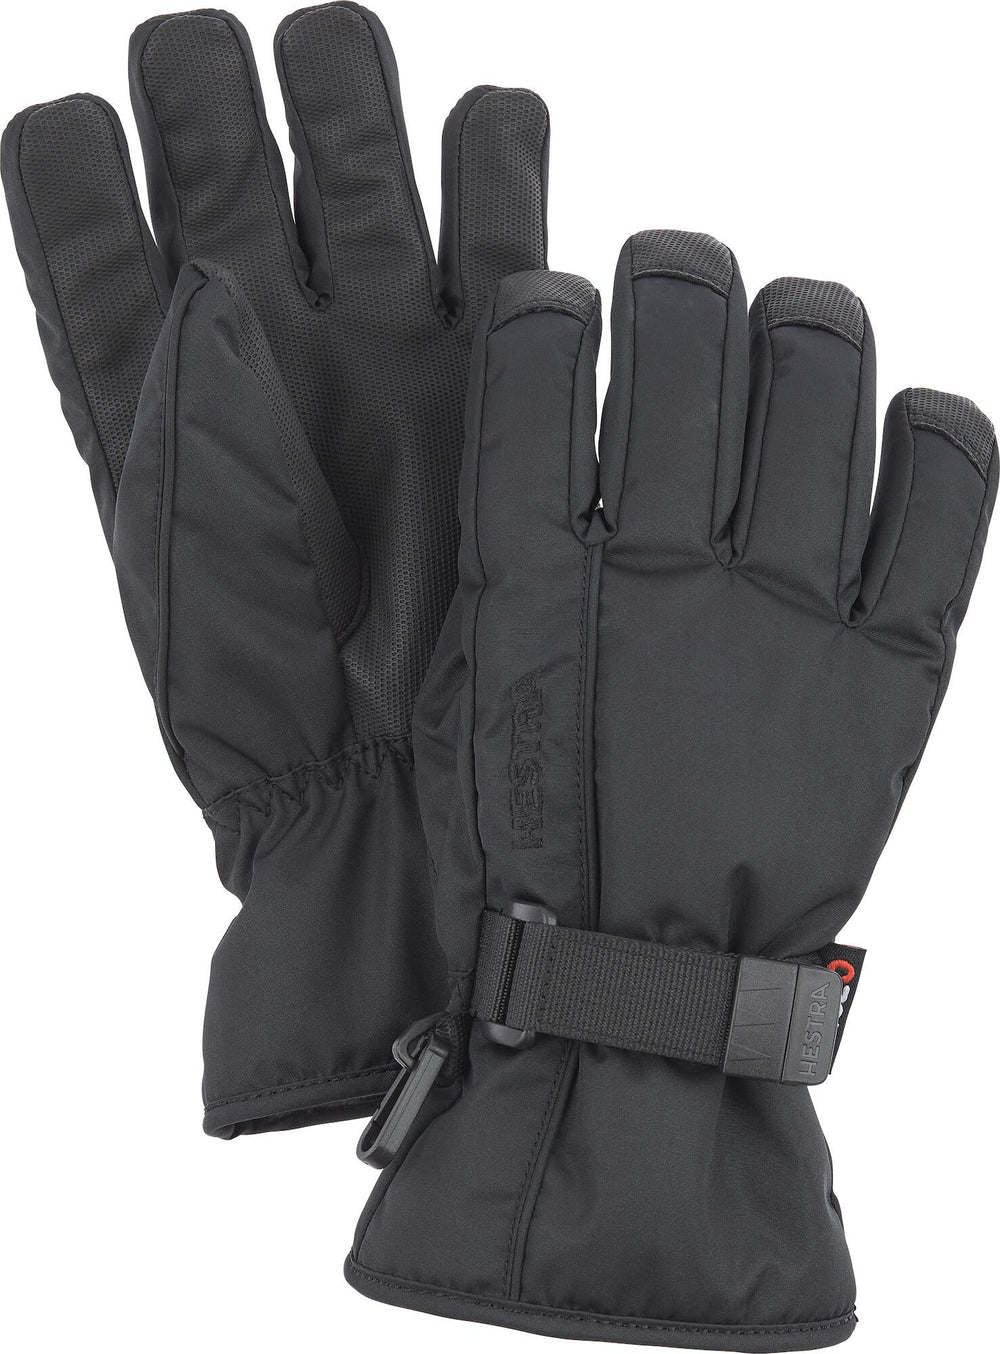 Isaberg Czone Jr. - 5 Finger Kinder Handschuh | S4 Supplies